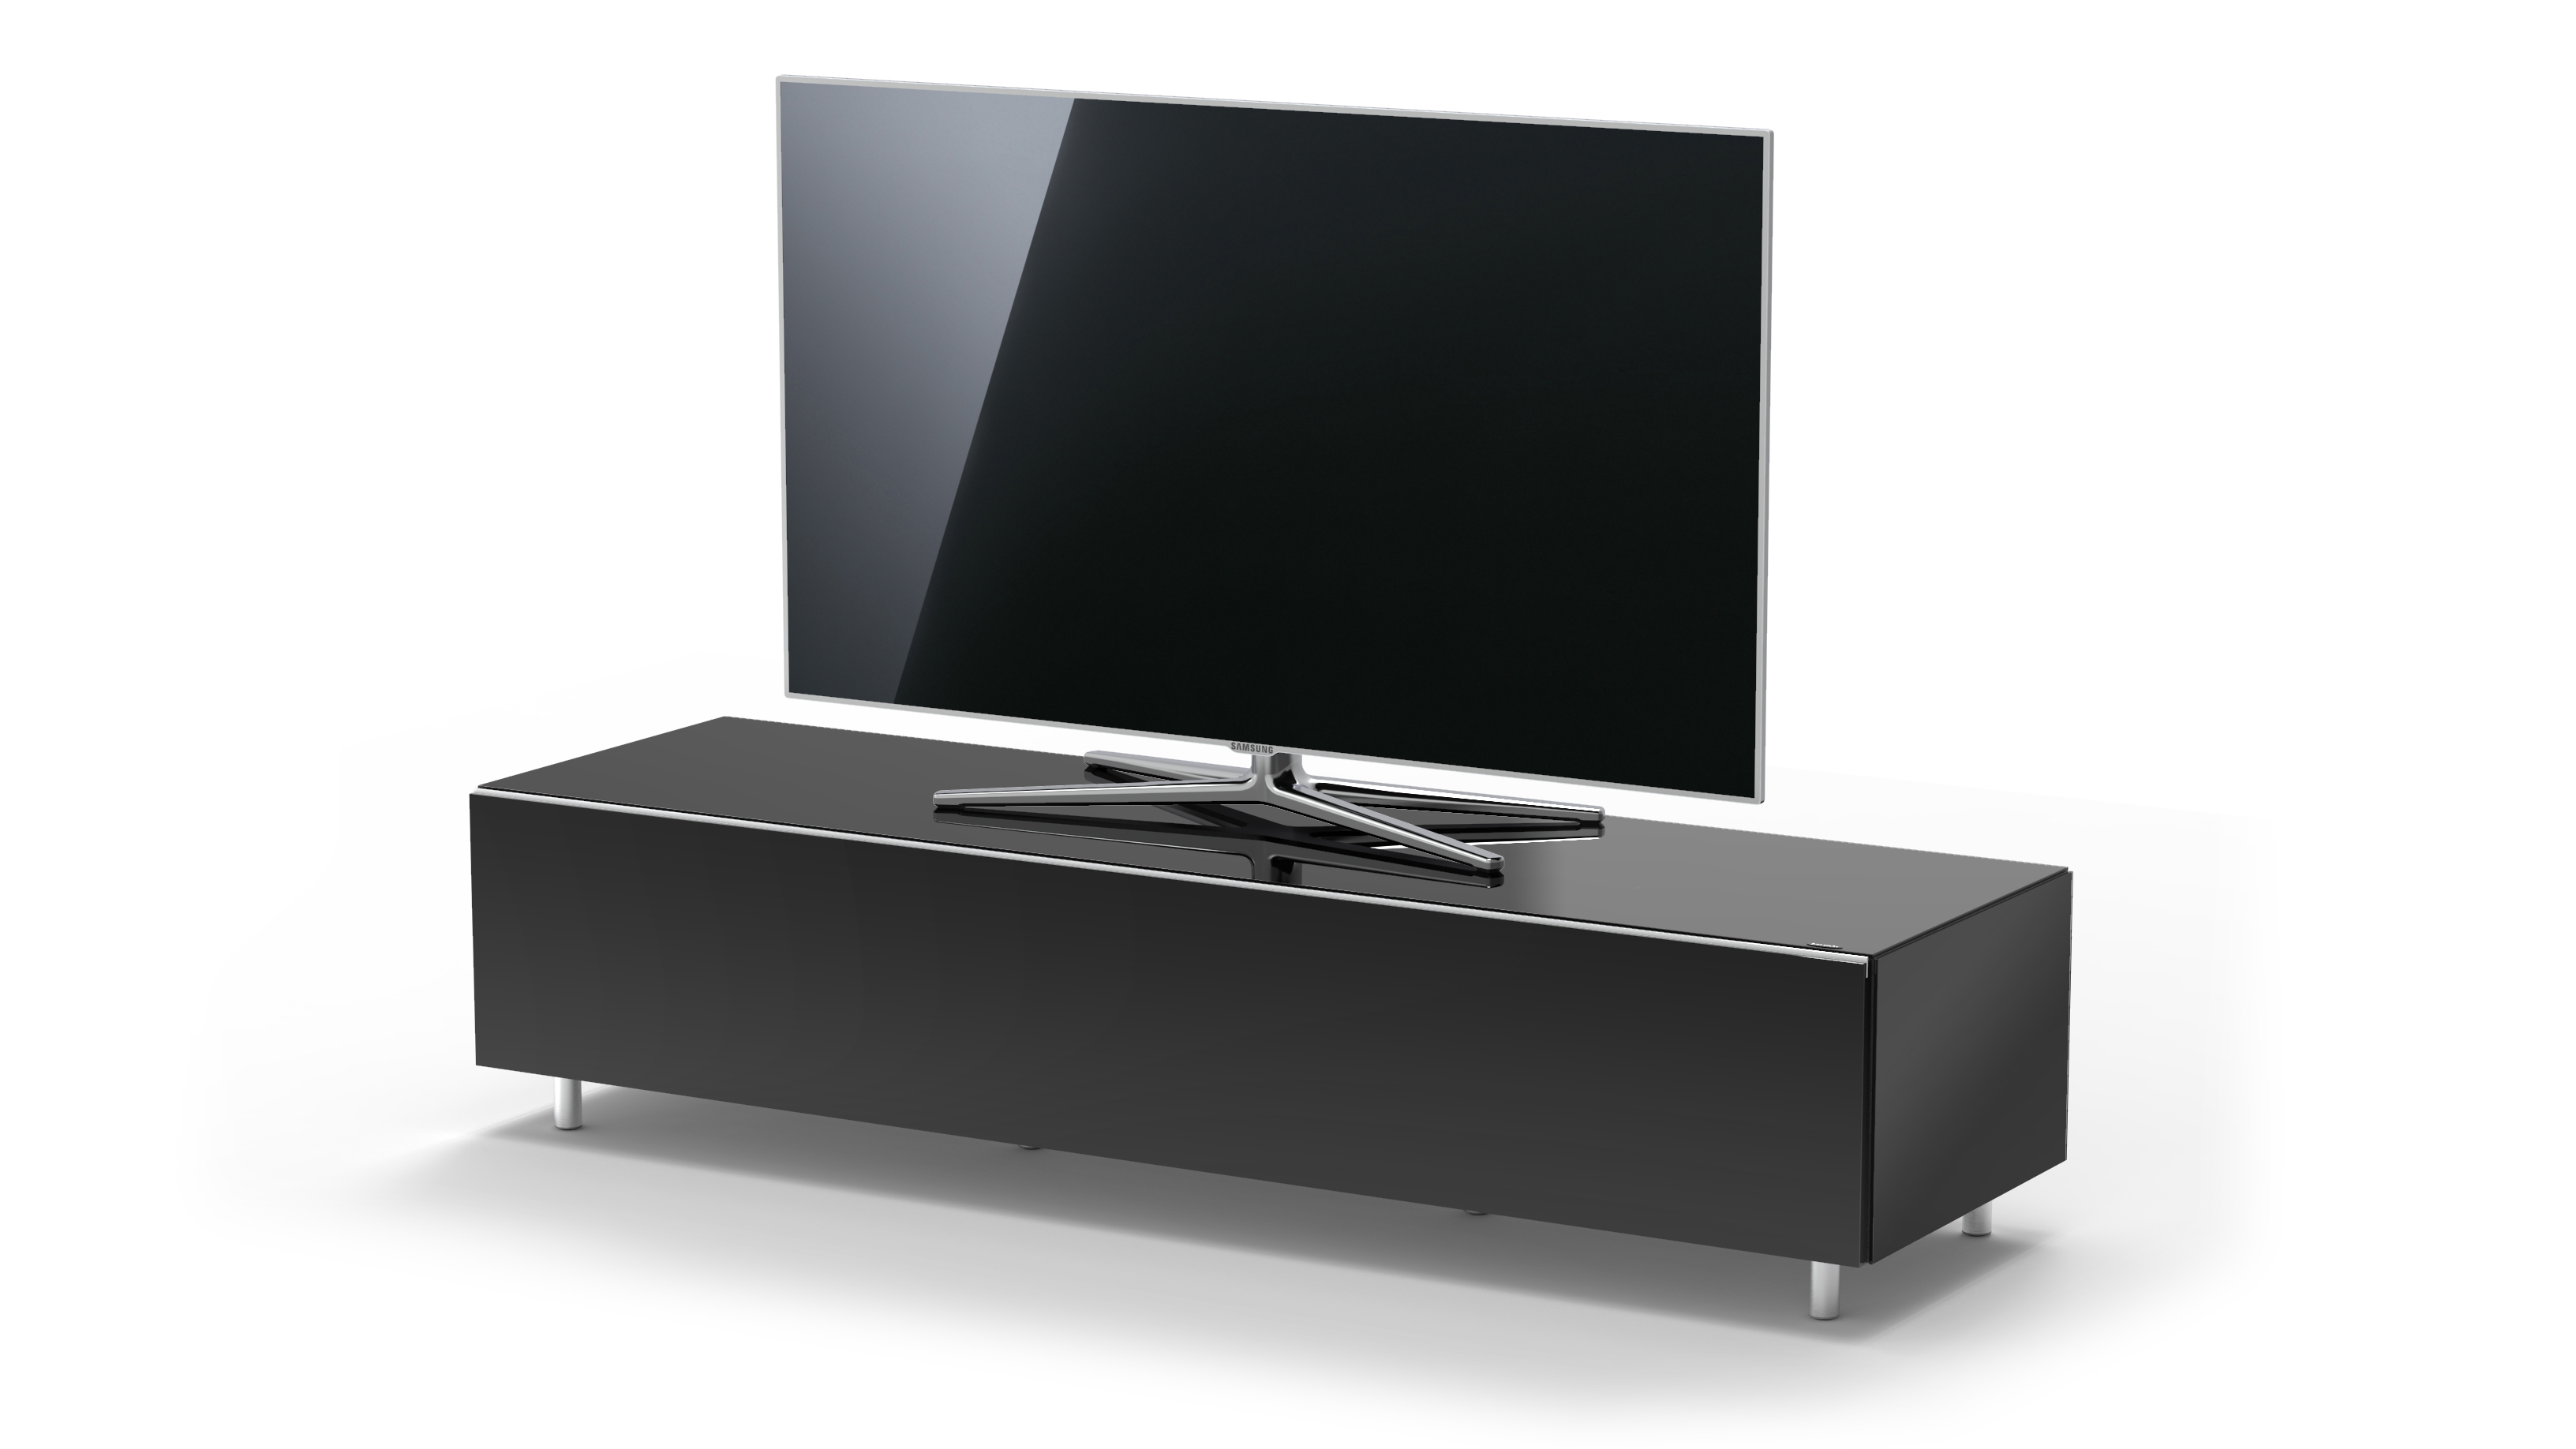 BY 165cm. Breite Black. TV-Lowboard SPECTRAL JUST TV-Lowboard 1650T. JRL